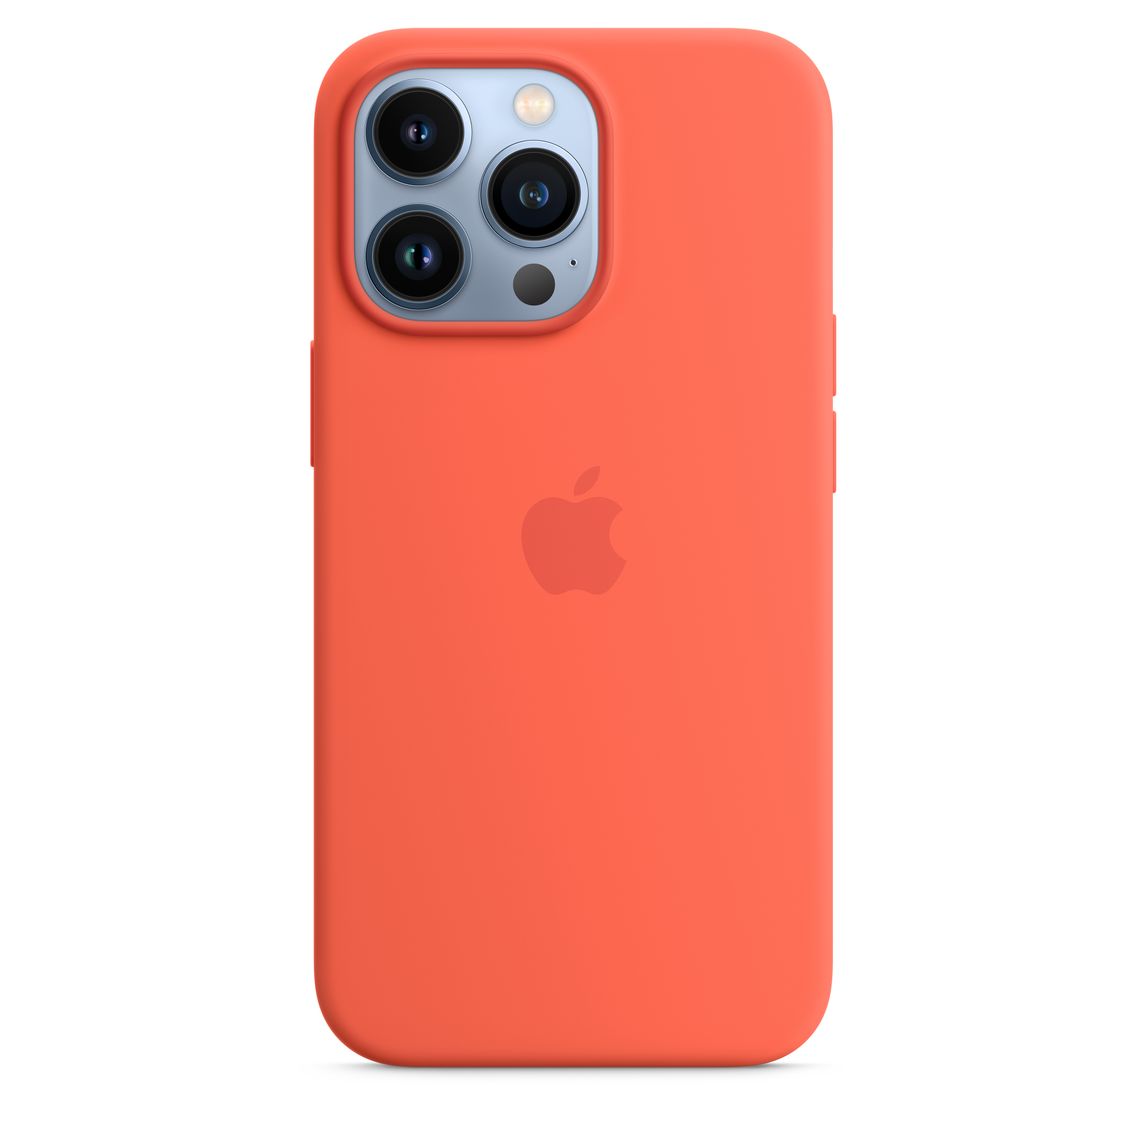 2022 蘋果春季發表會 iPhone MagSafe 矽膠保護殼